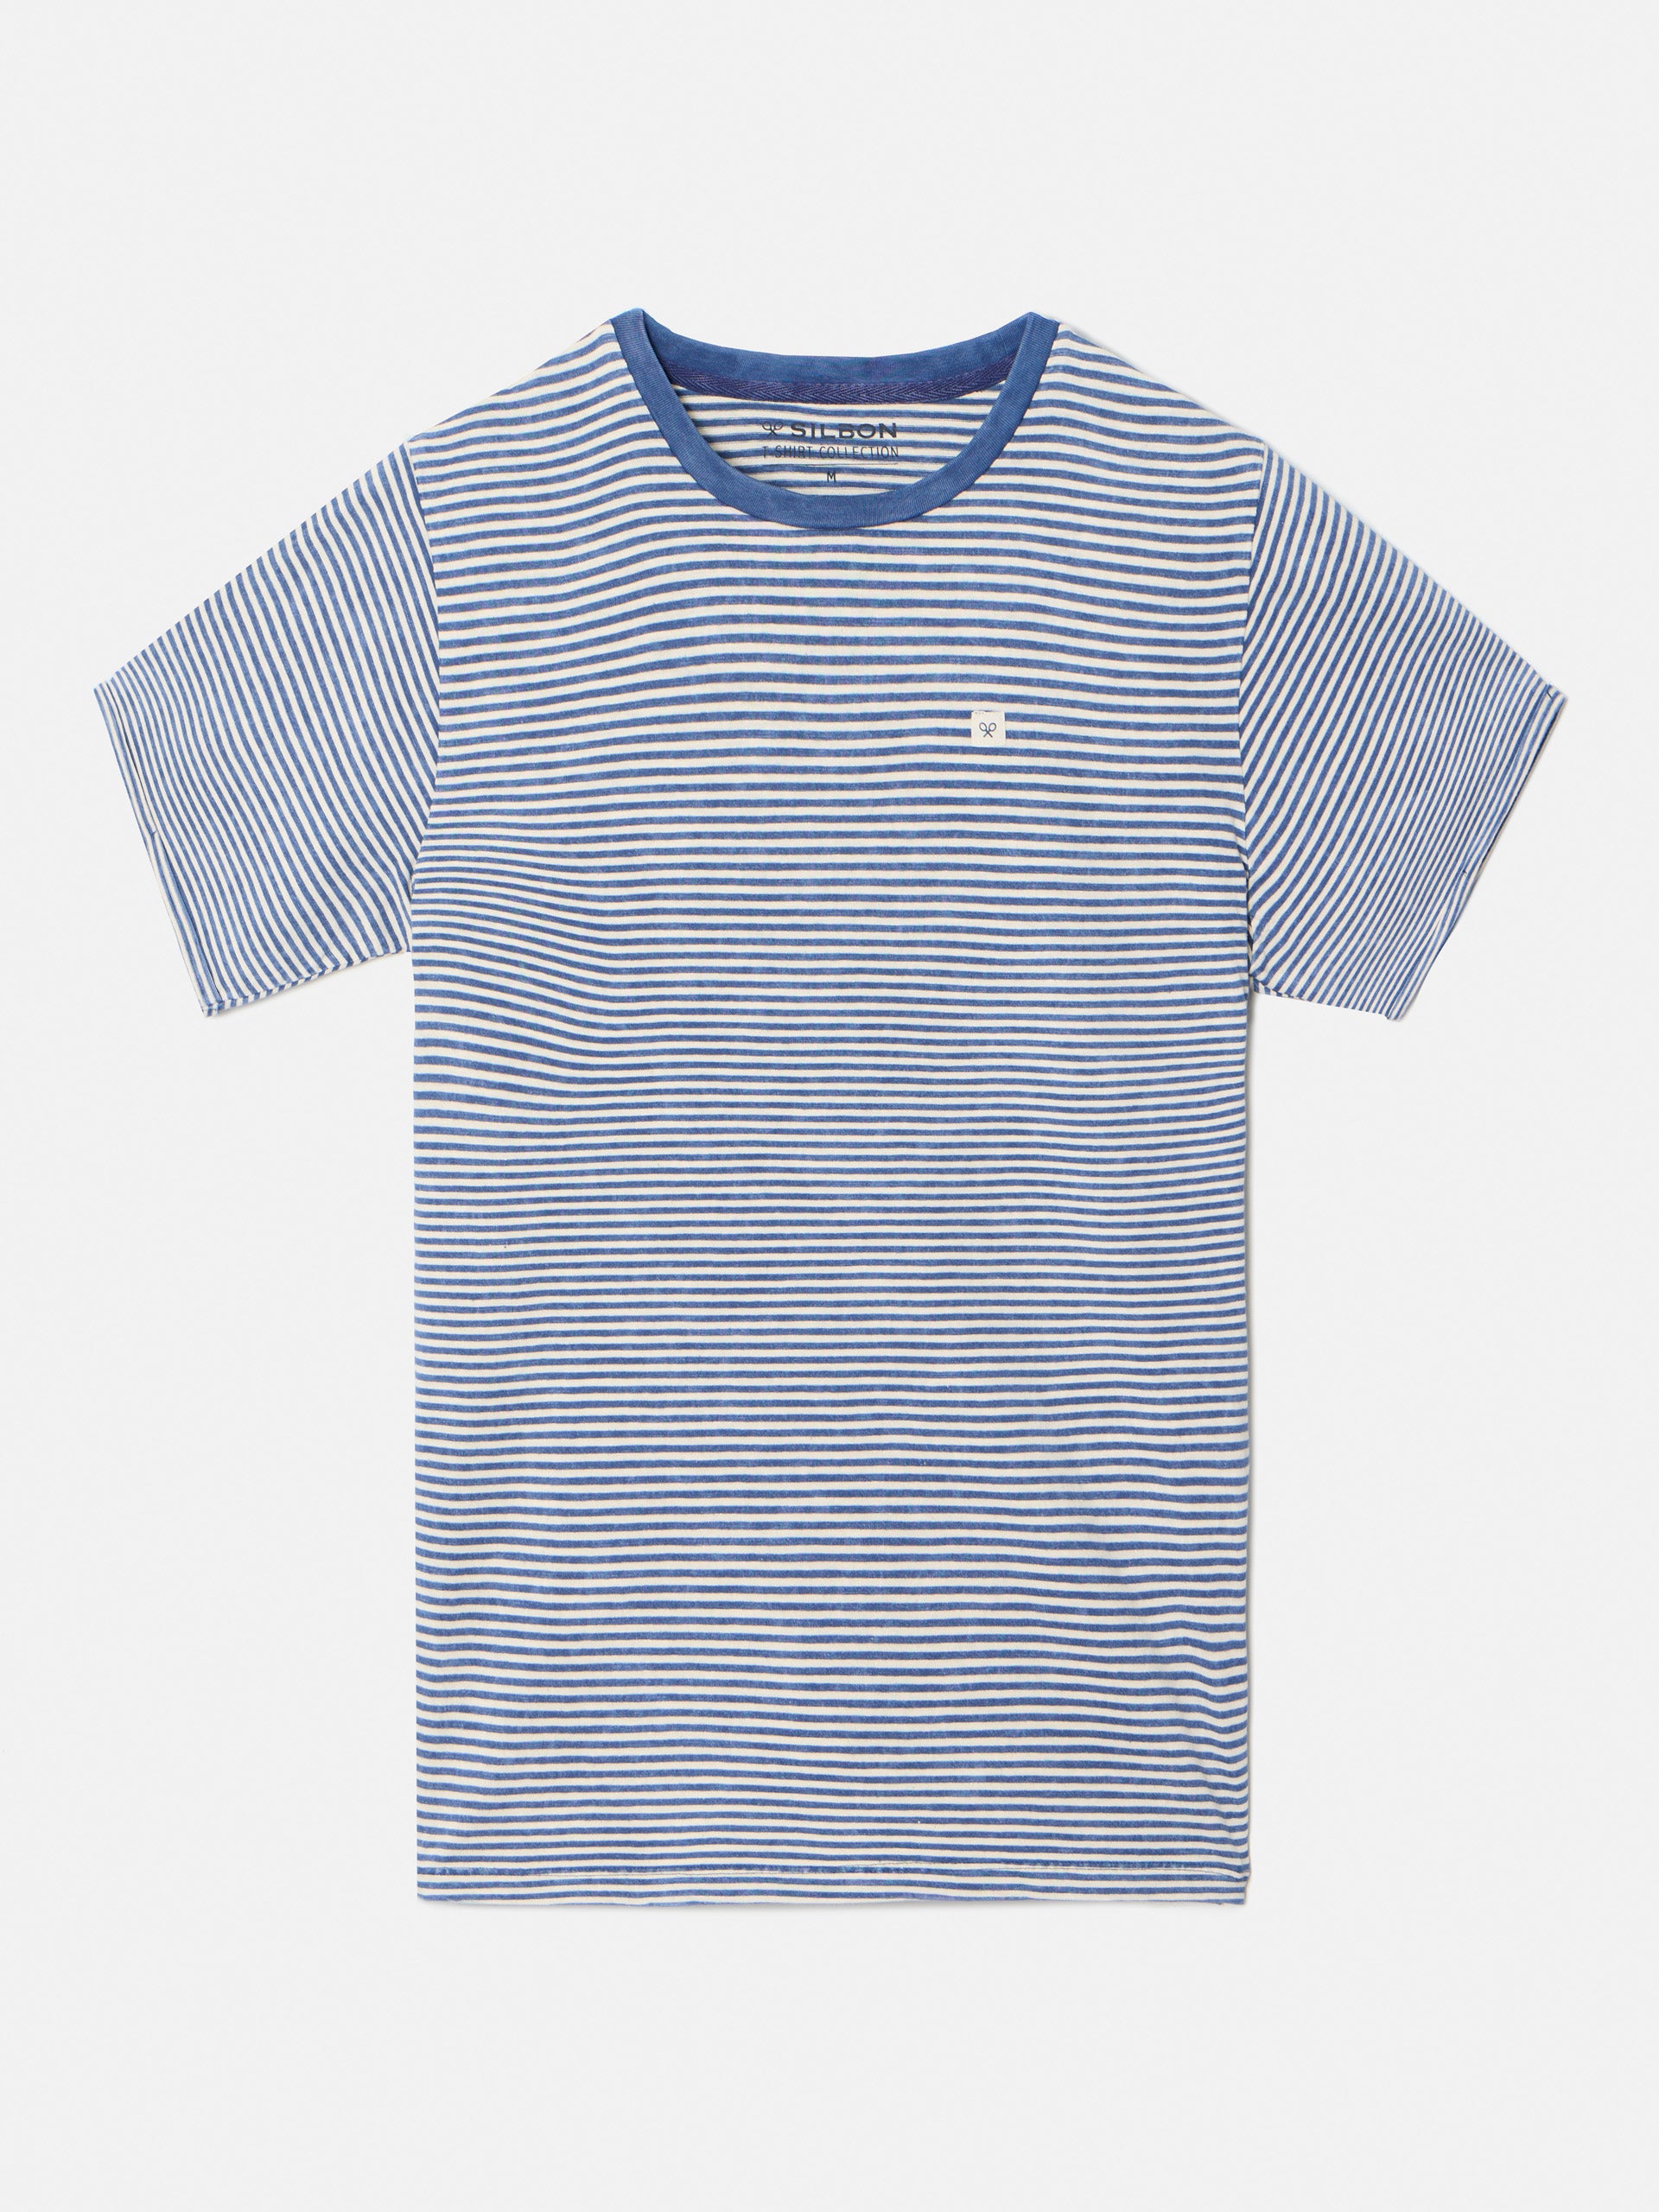 Camiseta rayas nauticas dye azul